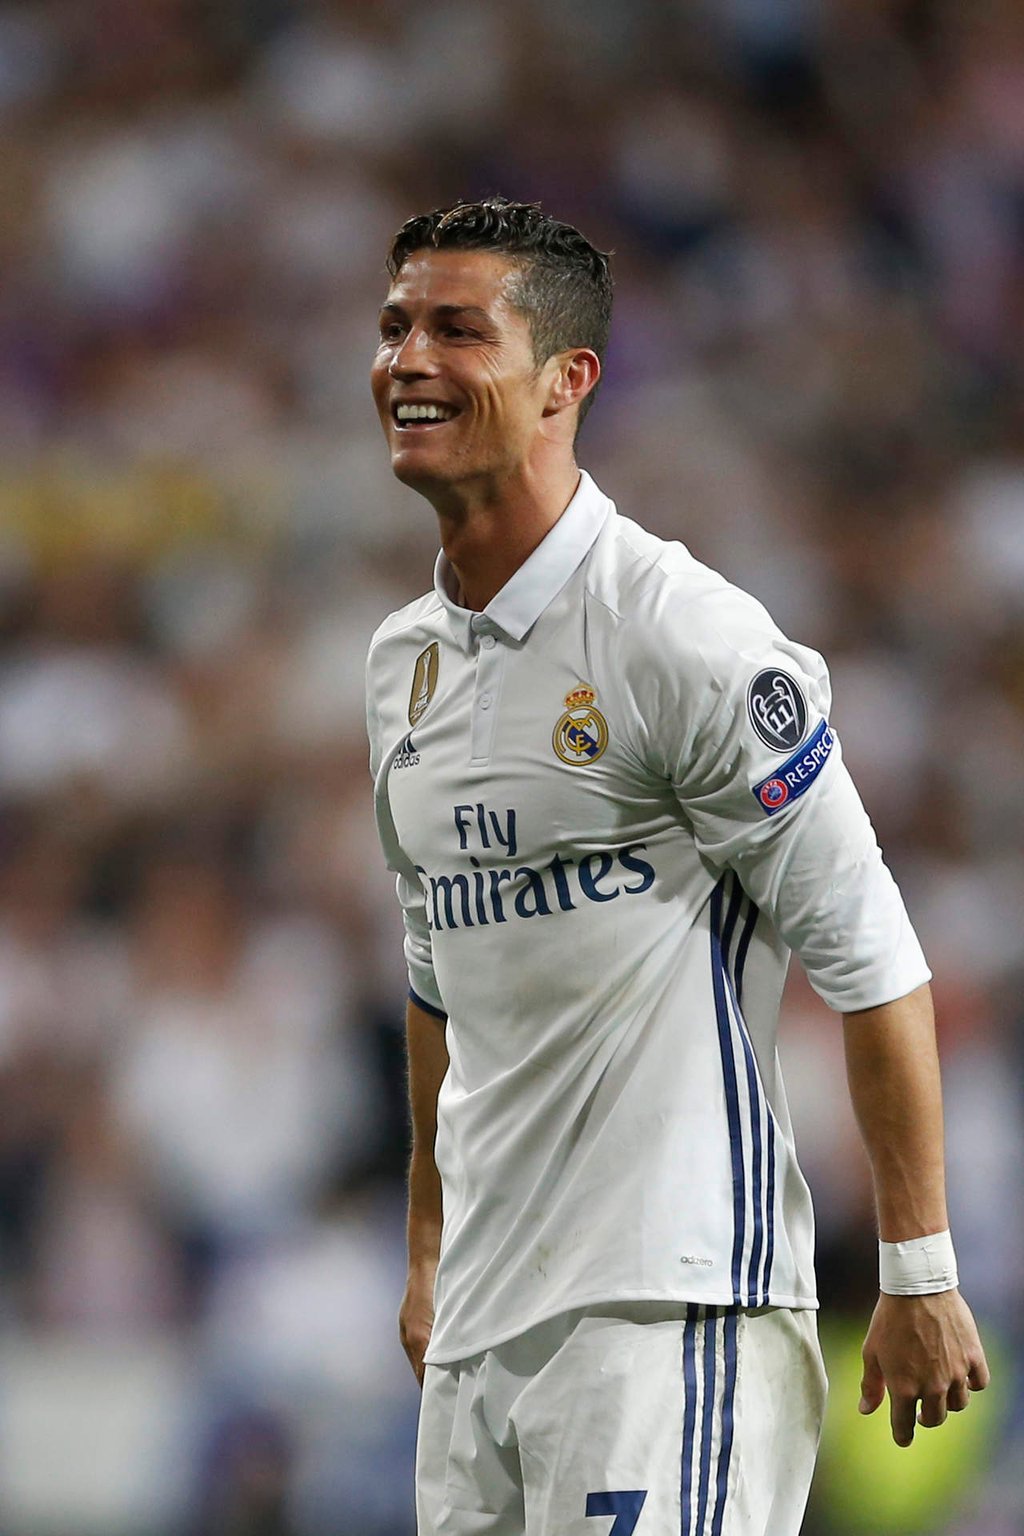 Involucran a Cristiano Ronaldo en presunta violación